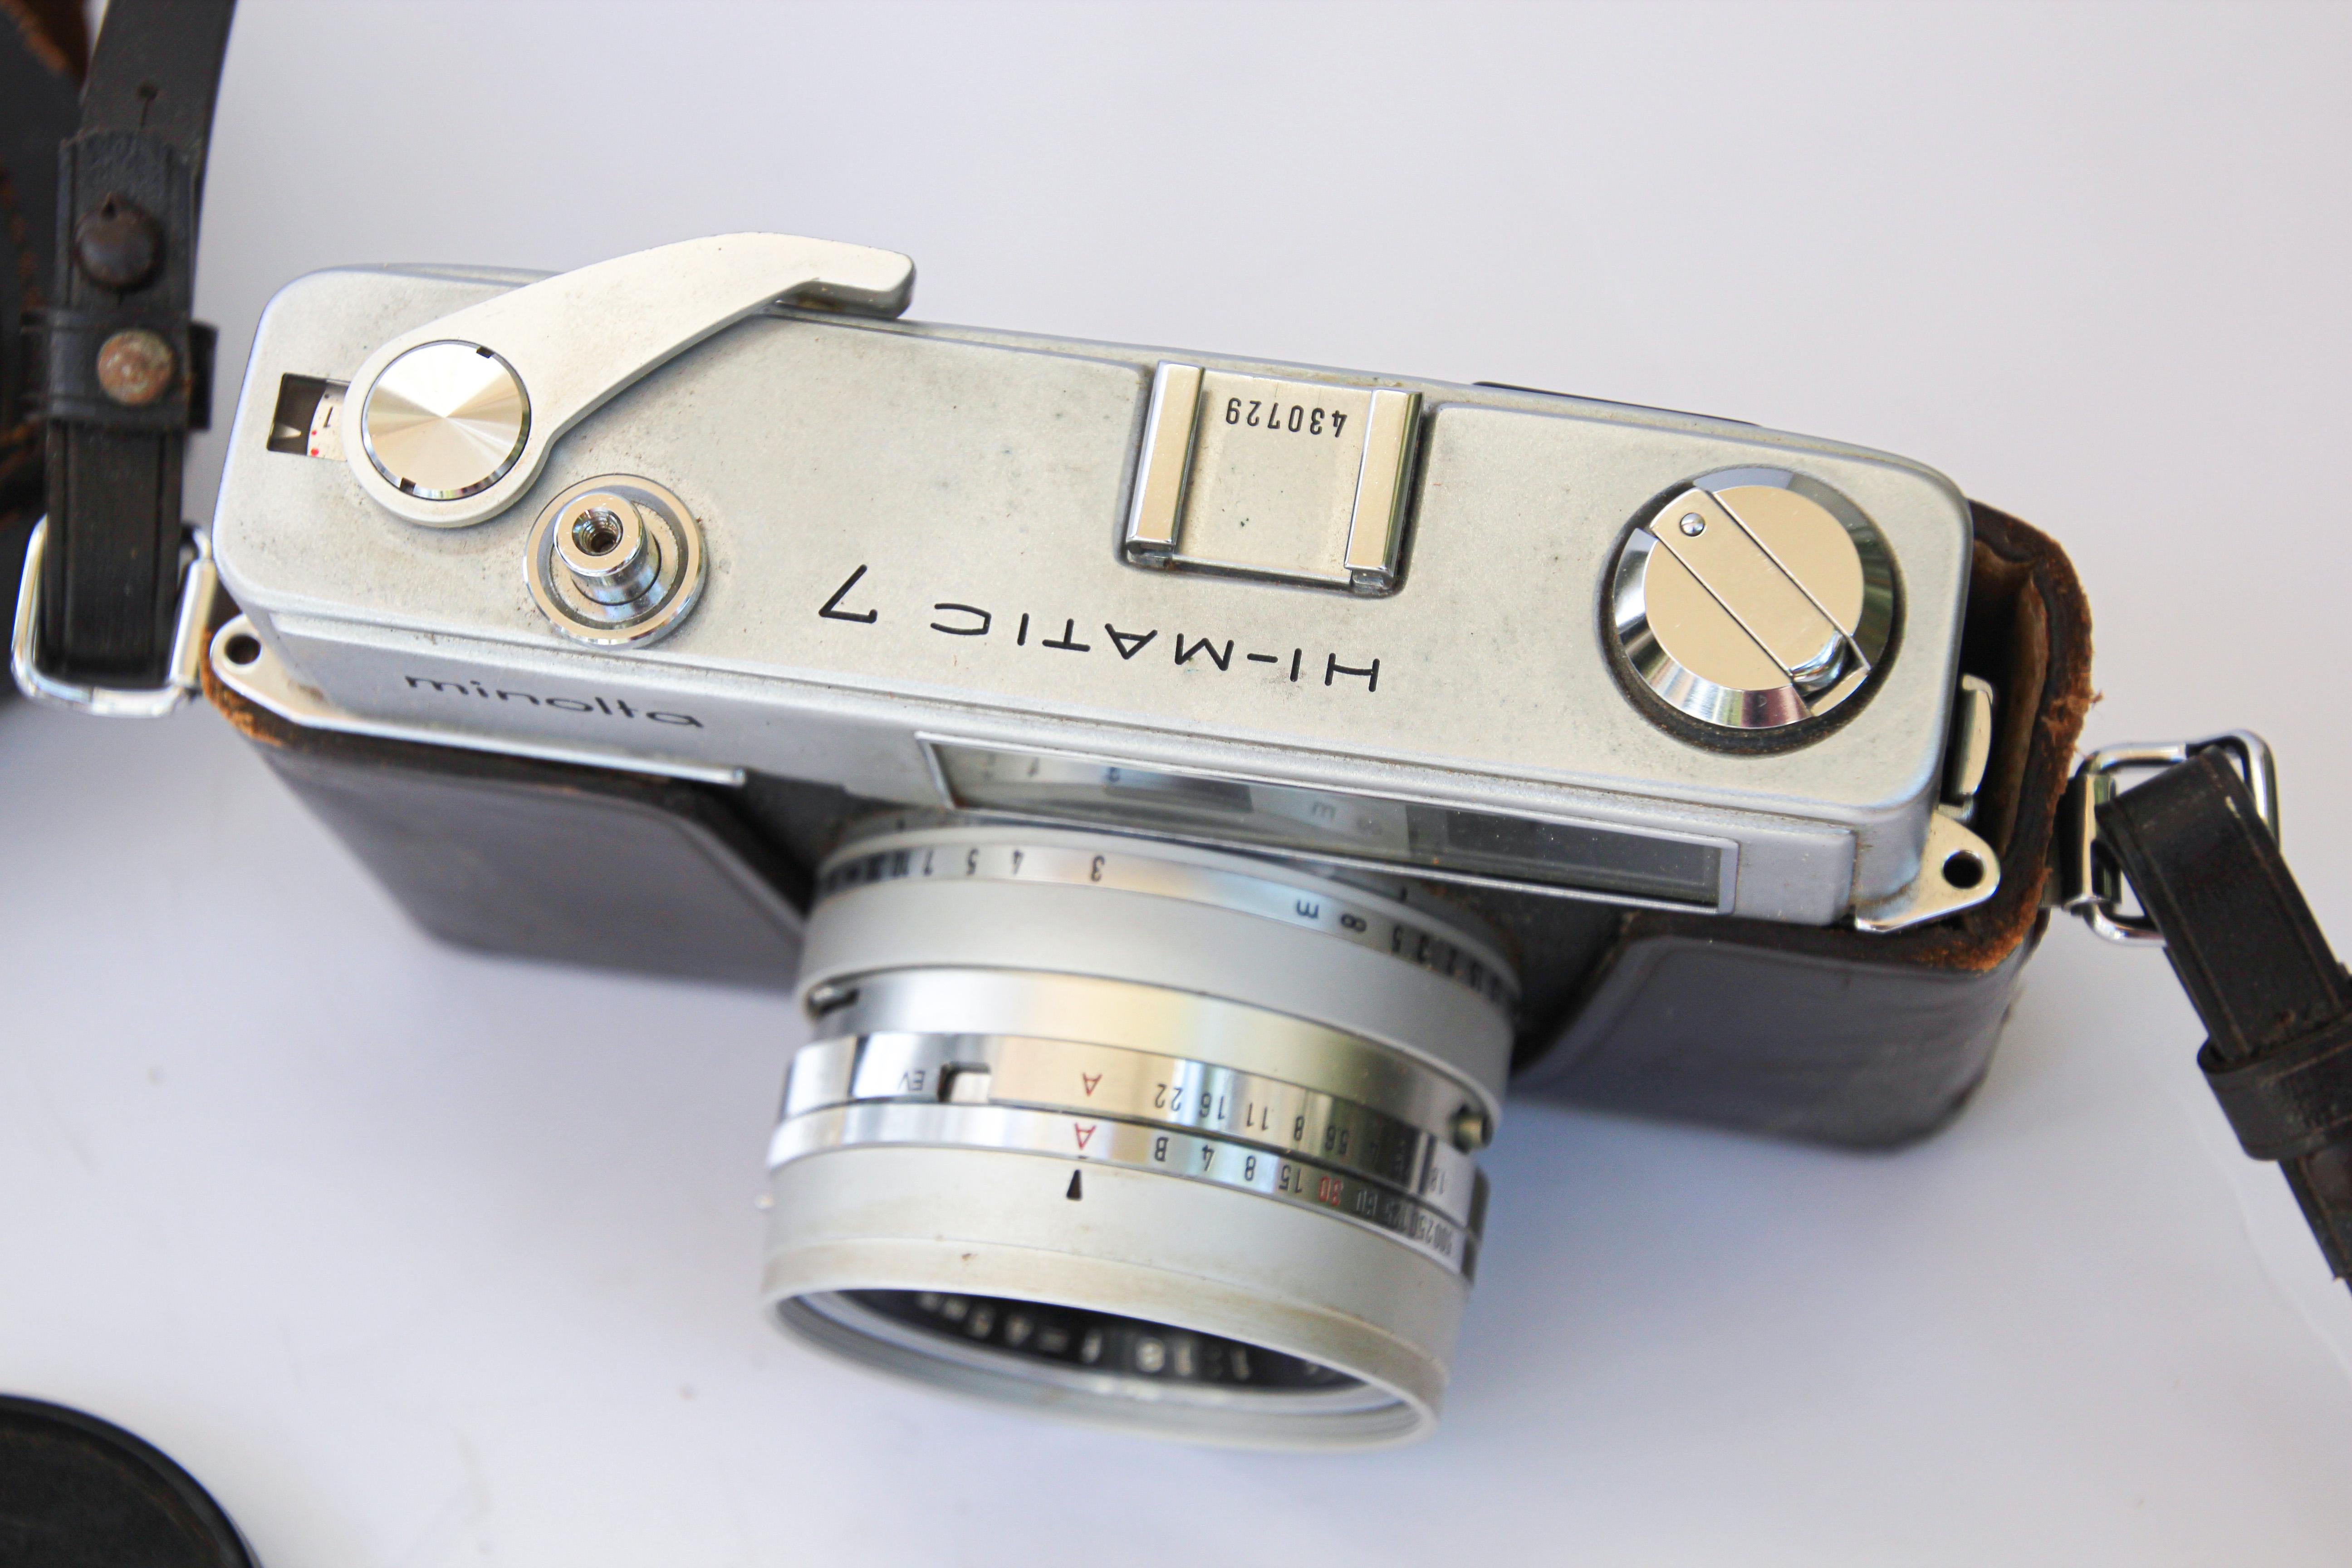 Sammlerstück aus den 1960er Jahren: Minolta HI-MATIC 7 35-mm-Filmkamera in Hartschalenkoffer.
Eine technologisch fortschrittliche alte Filmkamera.
Mit originaler Ledertasche und -riemen sowie dem originalen, gefrästen Objektivdeckel,
Hergestellt